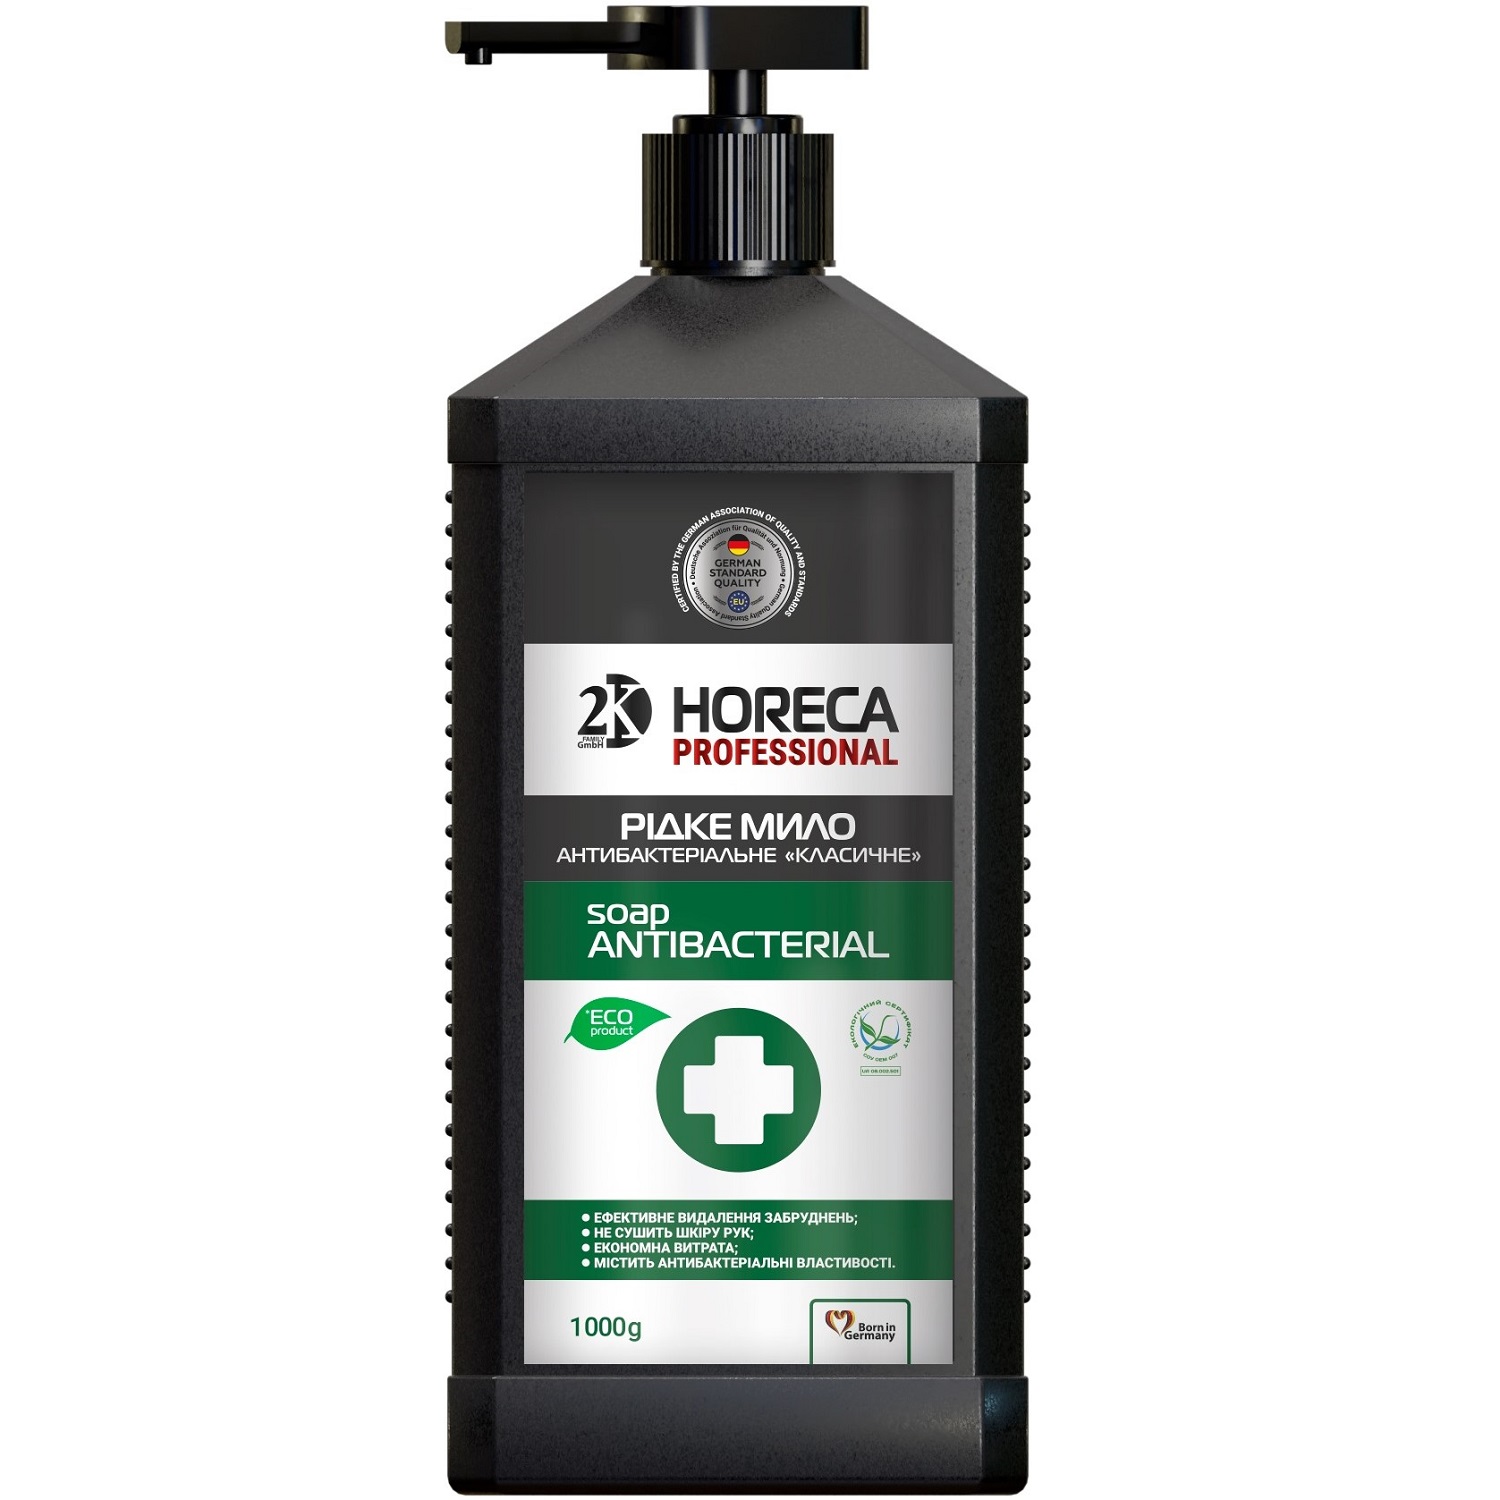 Жидкое мыло 2K Horeca Professional, антибактериальное, 1000 г - фото 1